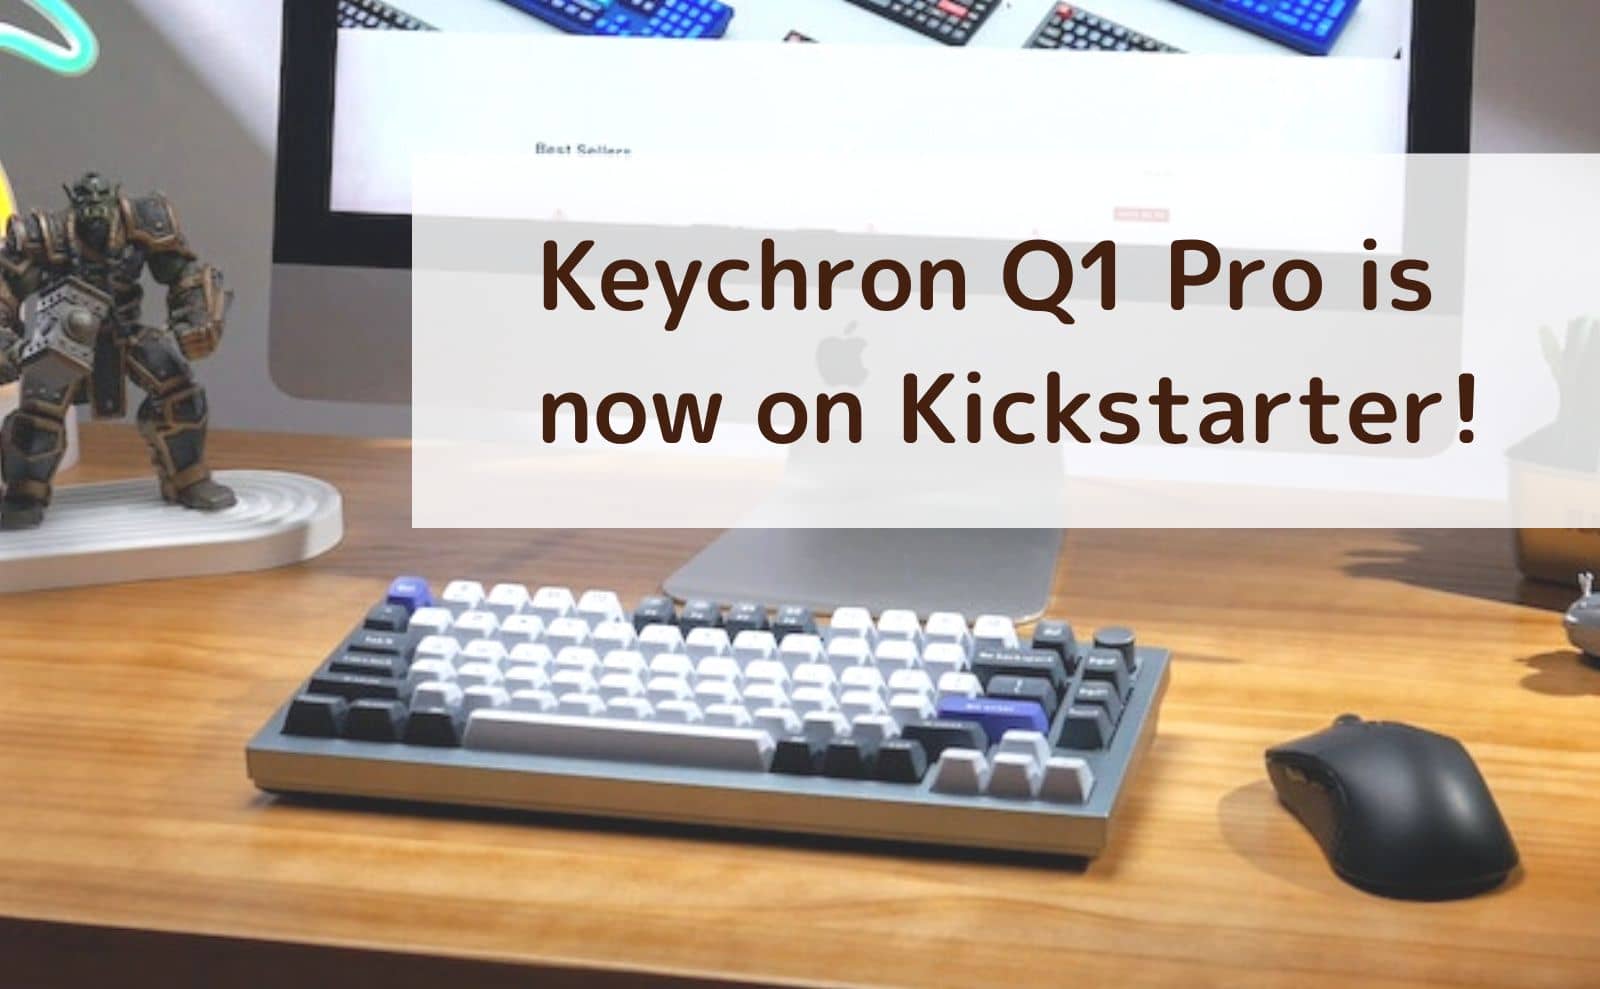 Keychron Q1 Pro is now on Kickstarter